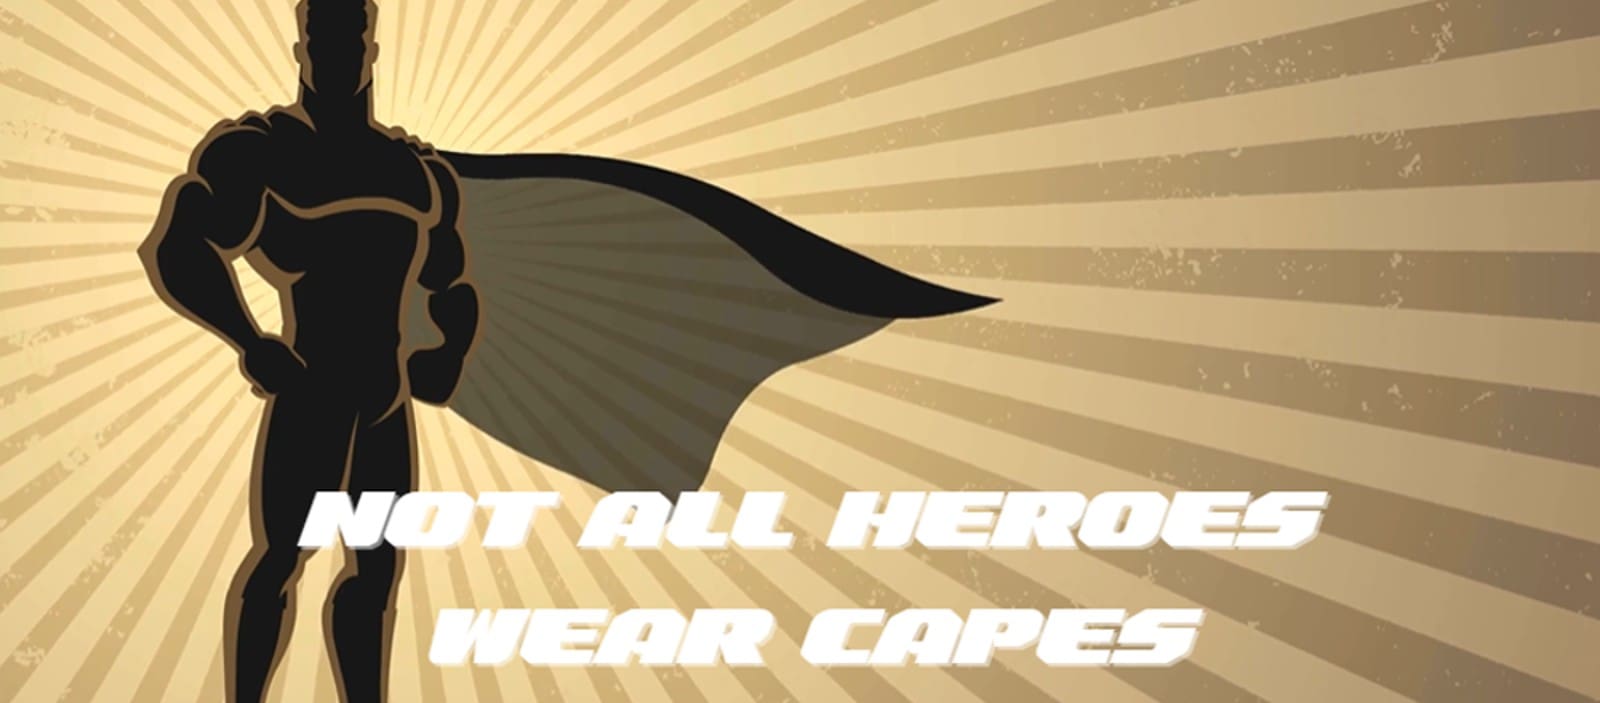 Not all heroes wear